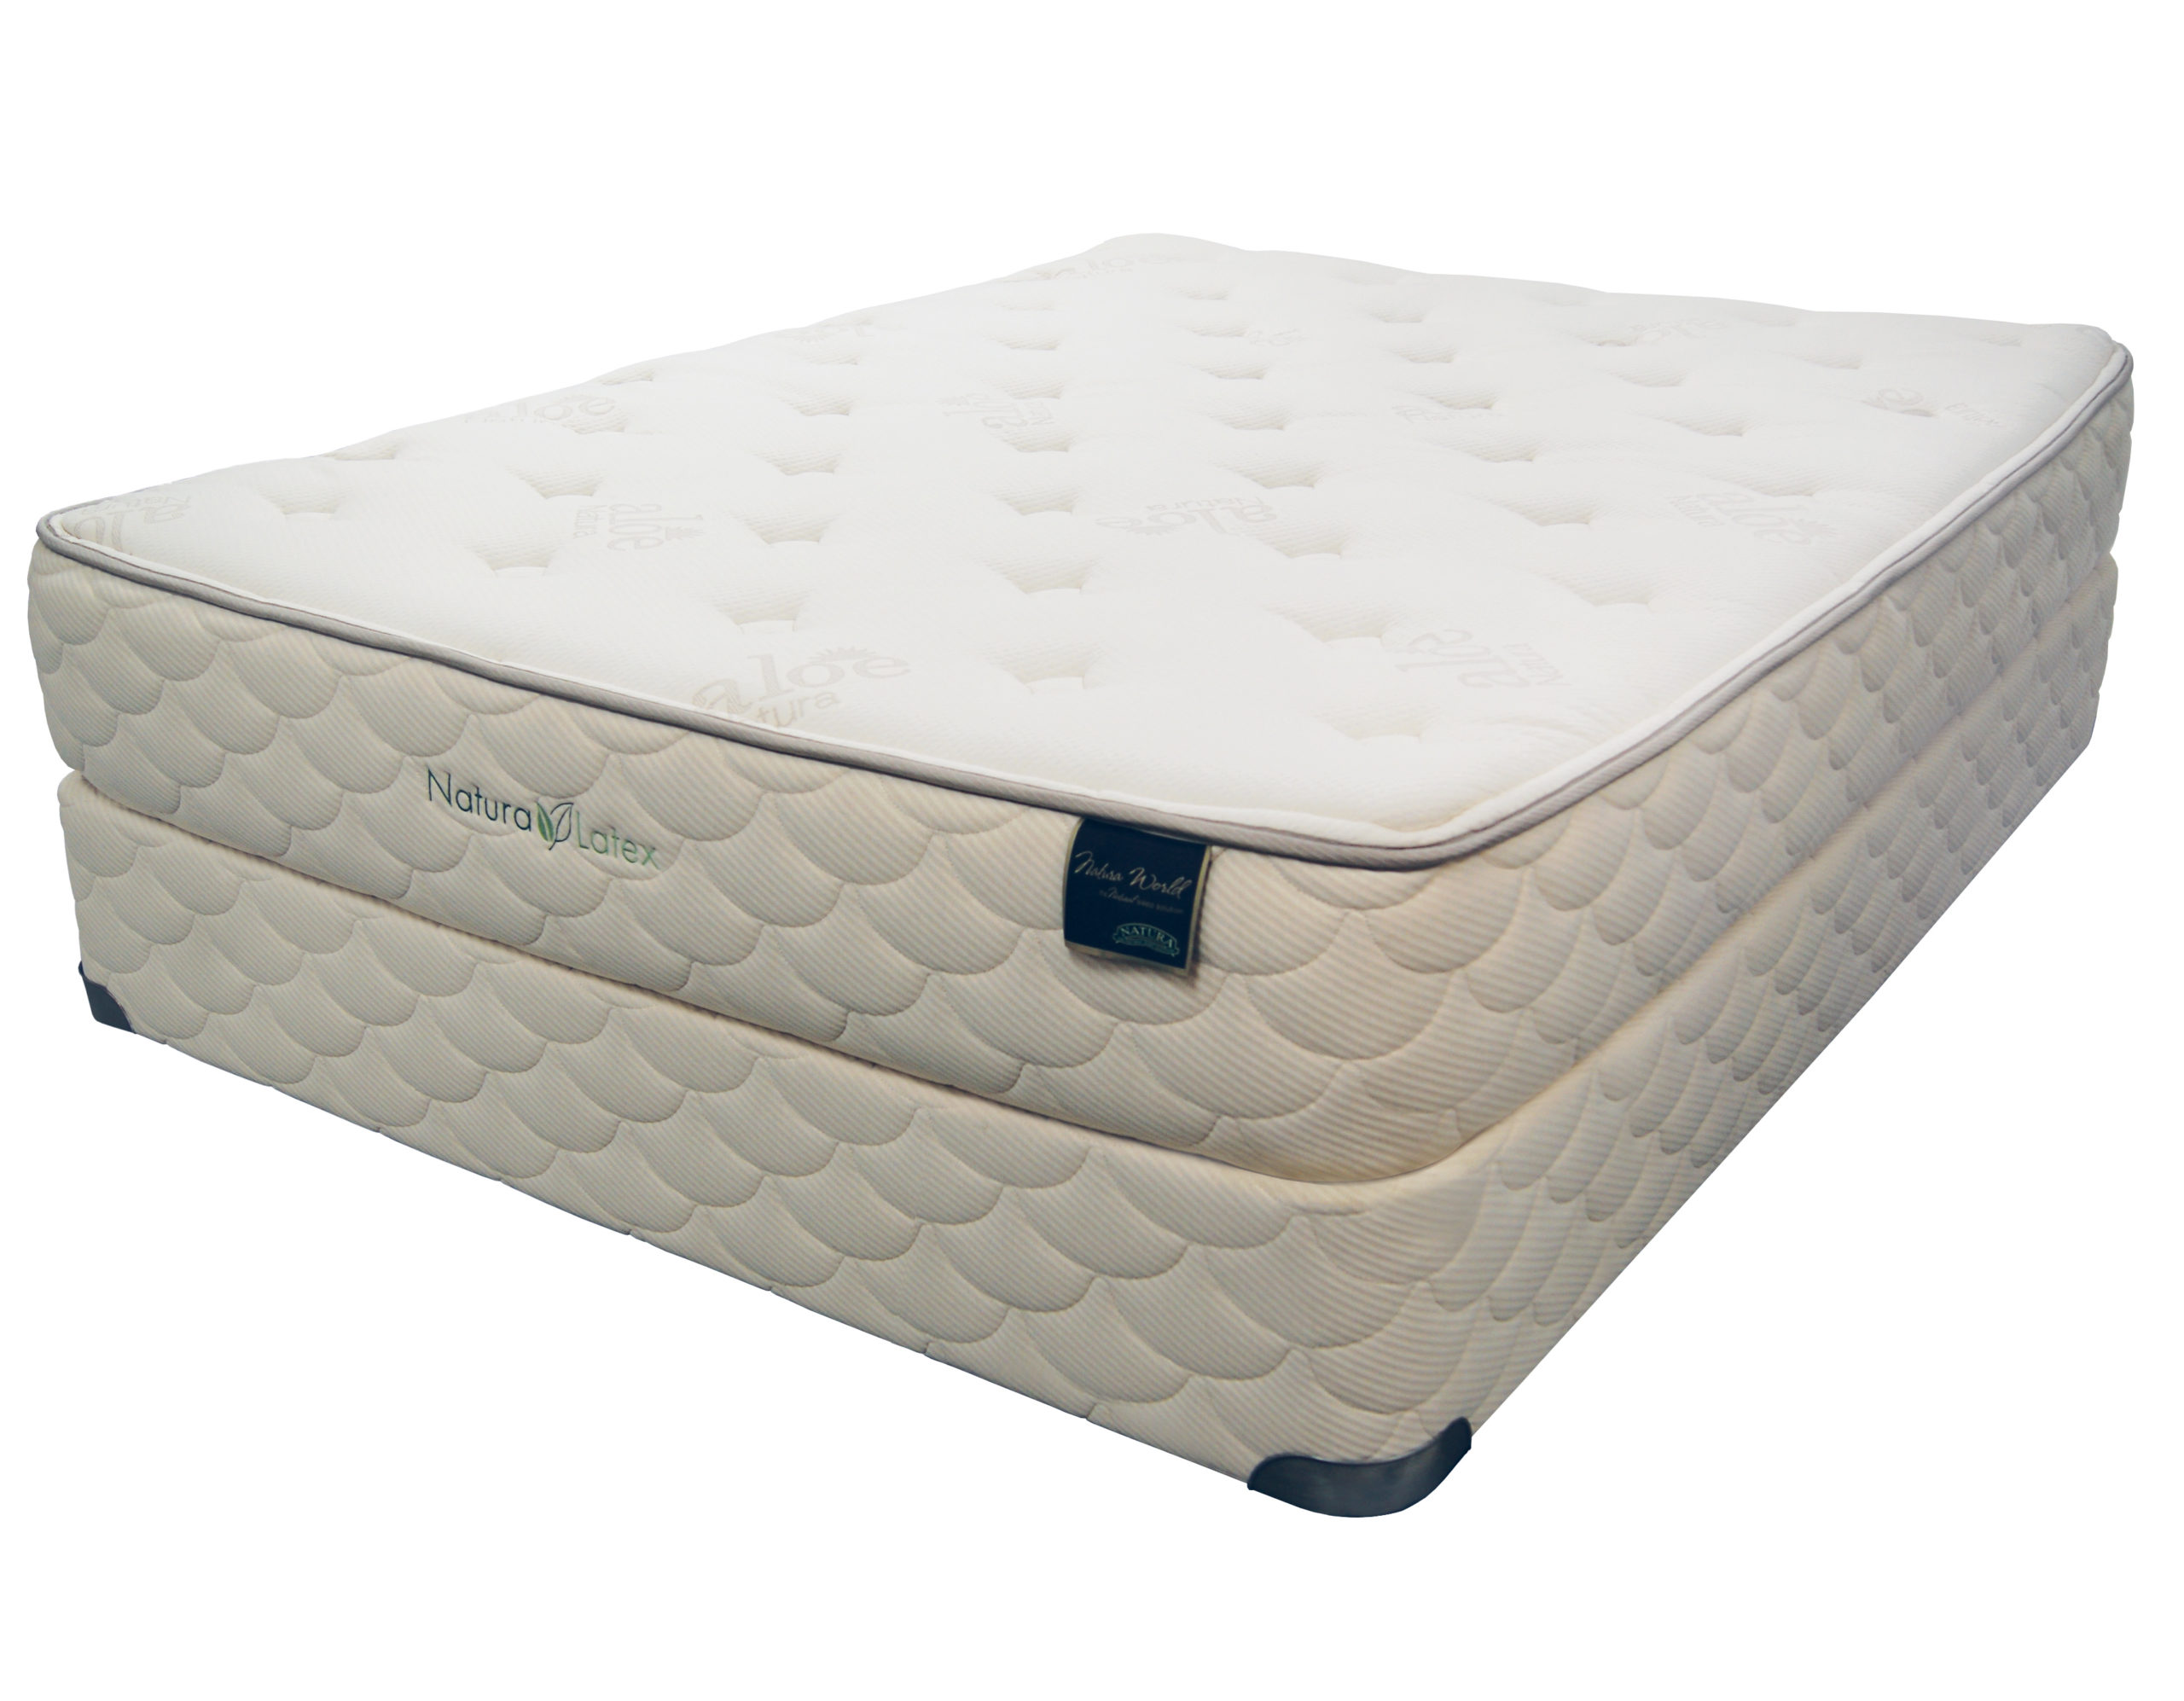 sears latex foam mattress